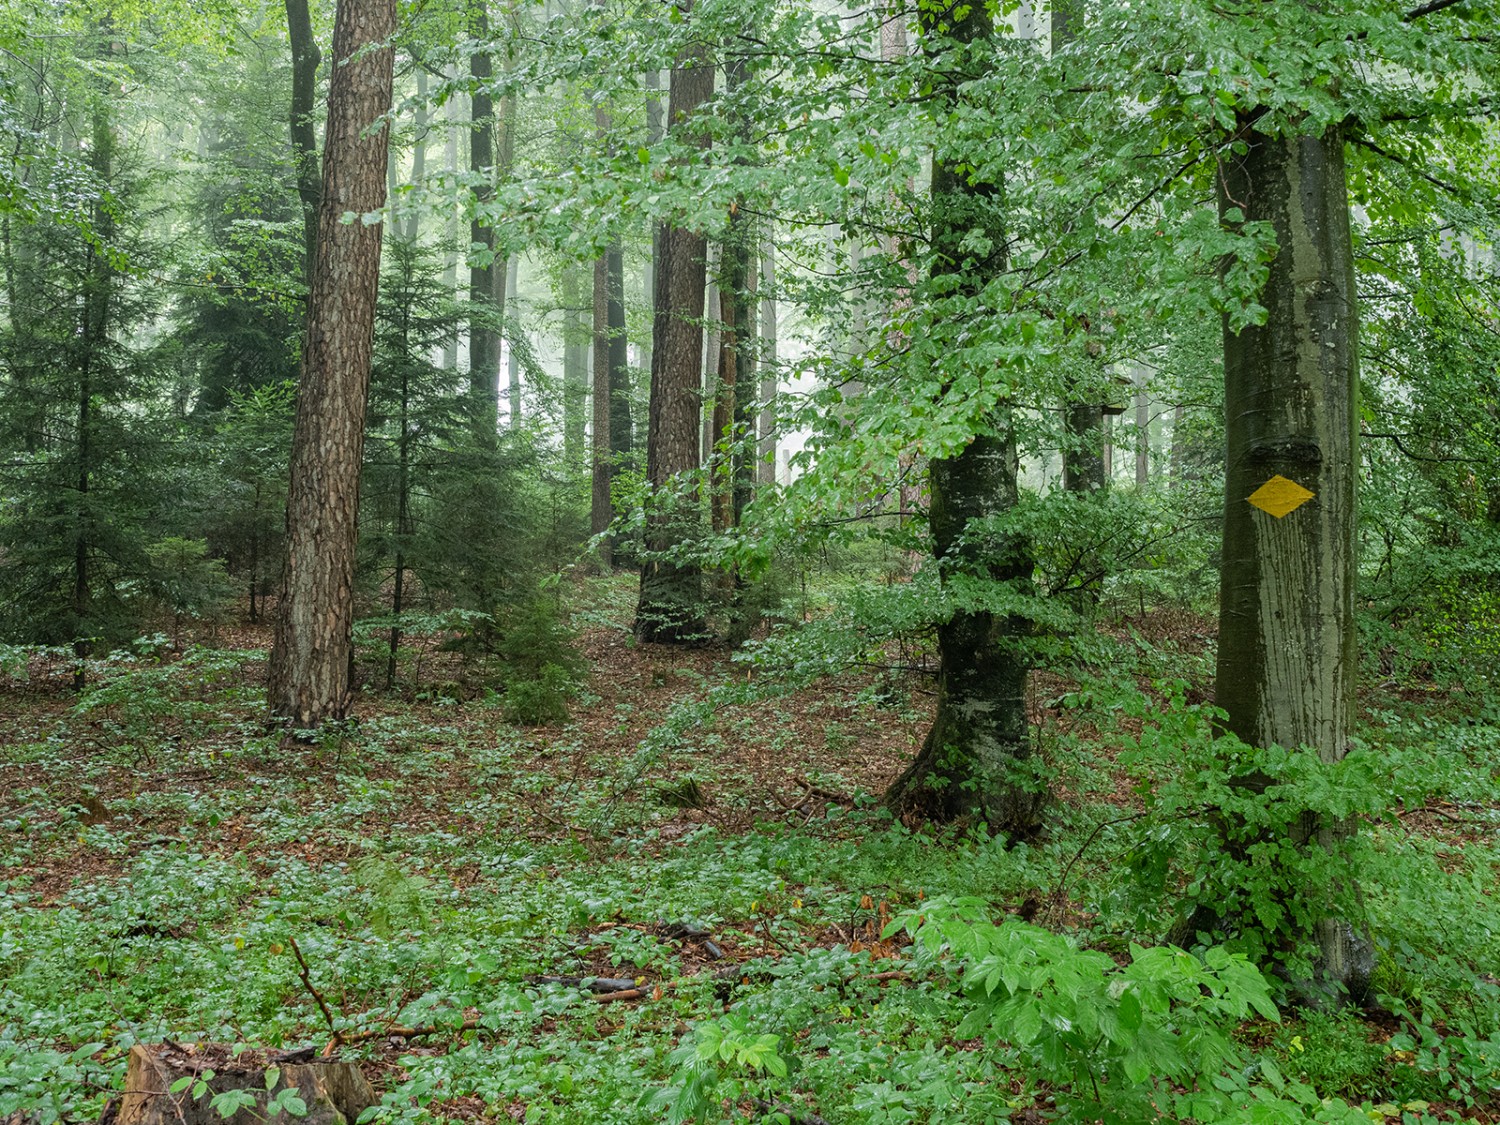 Oberirdisch durchzieht das Wanderwegnetz den Misch- und Nutzwald Grauholz, unterirdisch das Netz der Pilze.